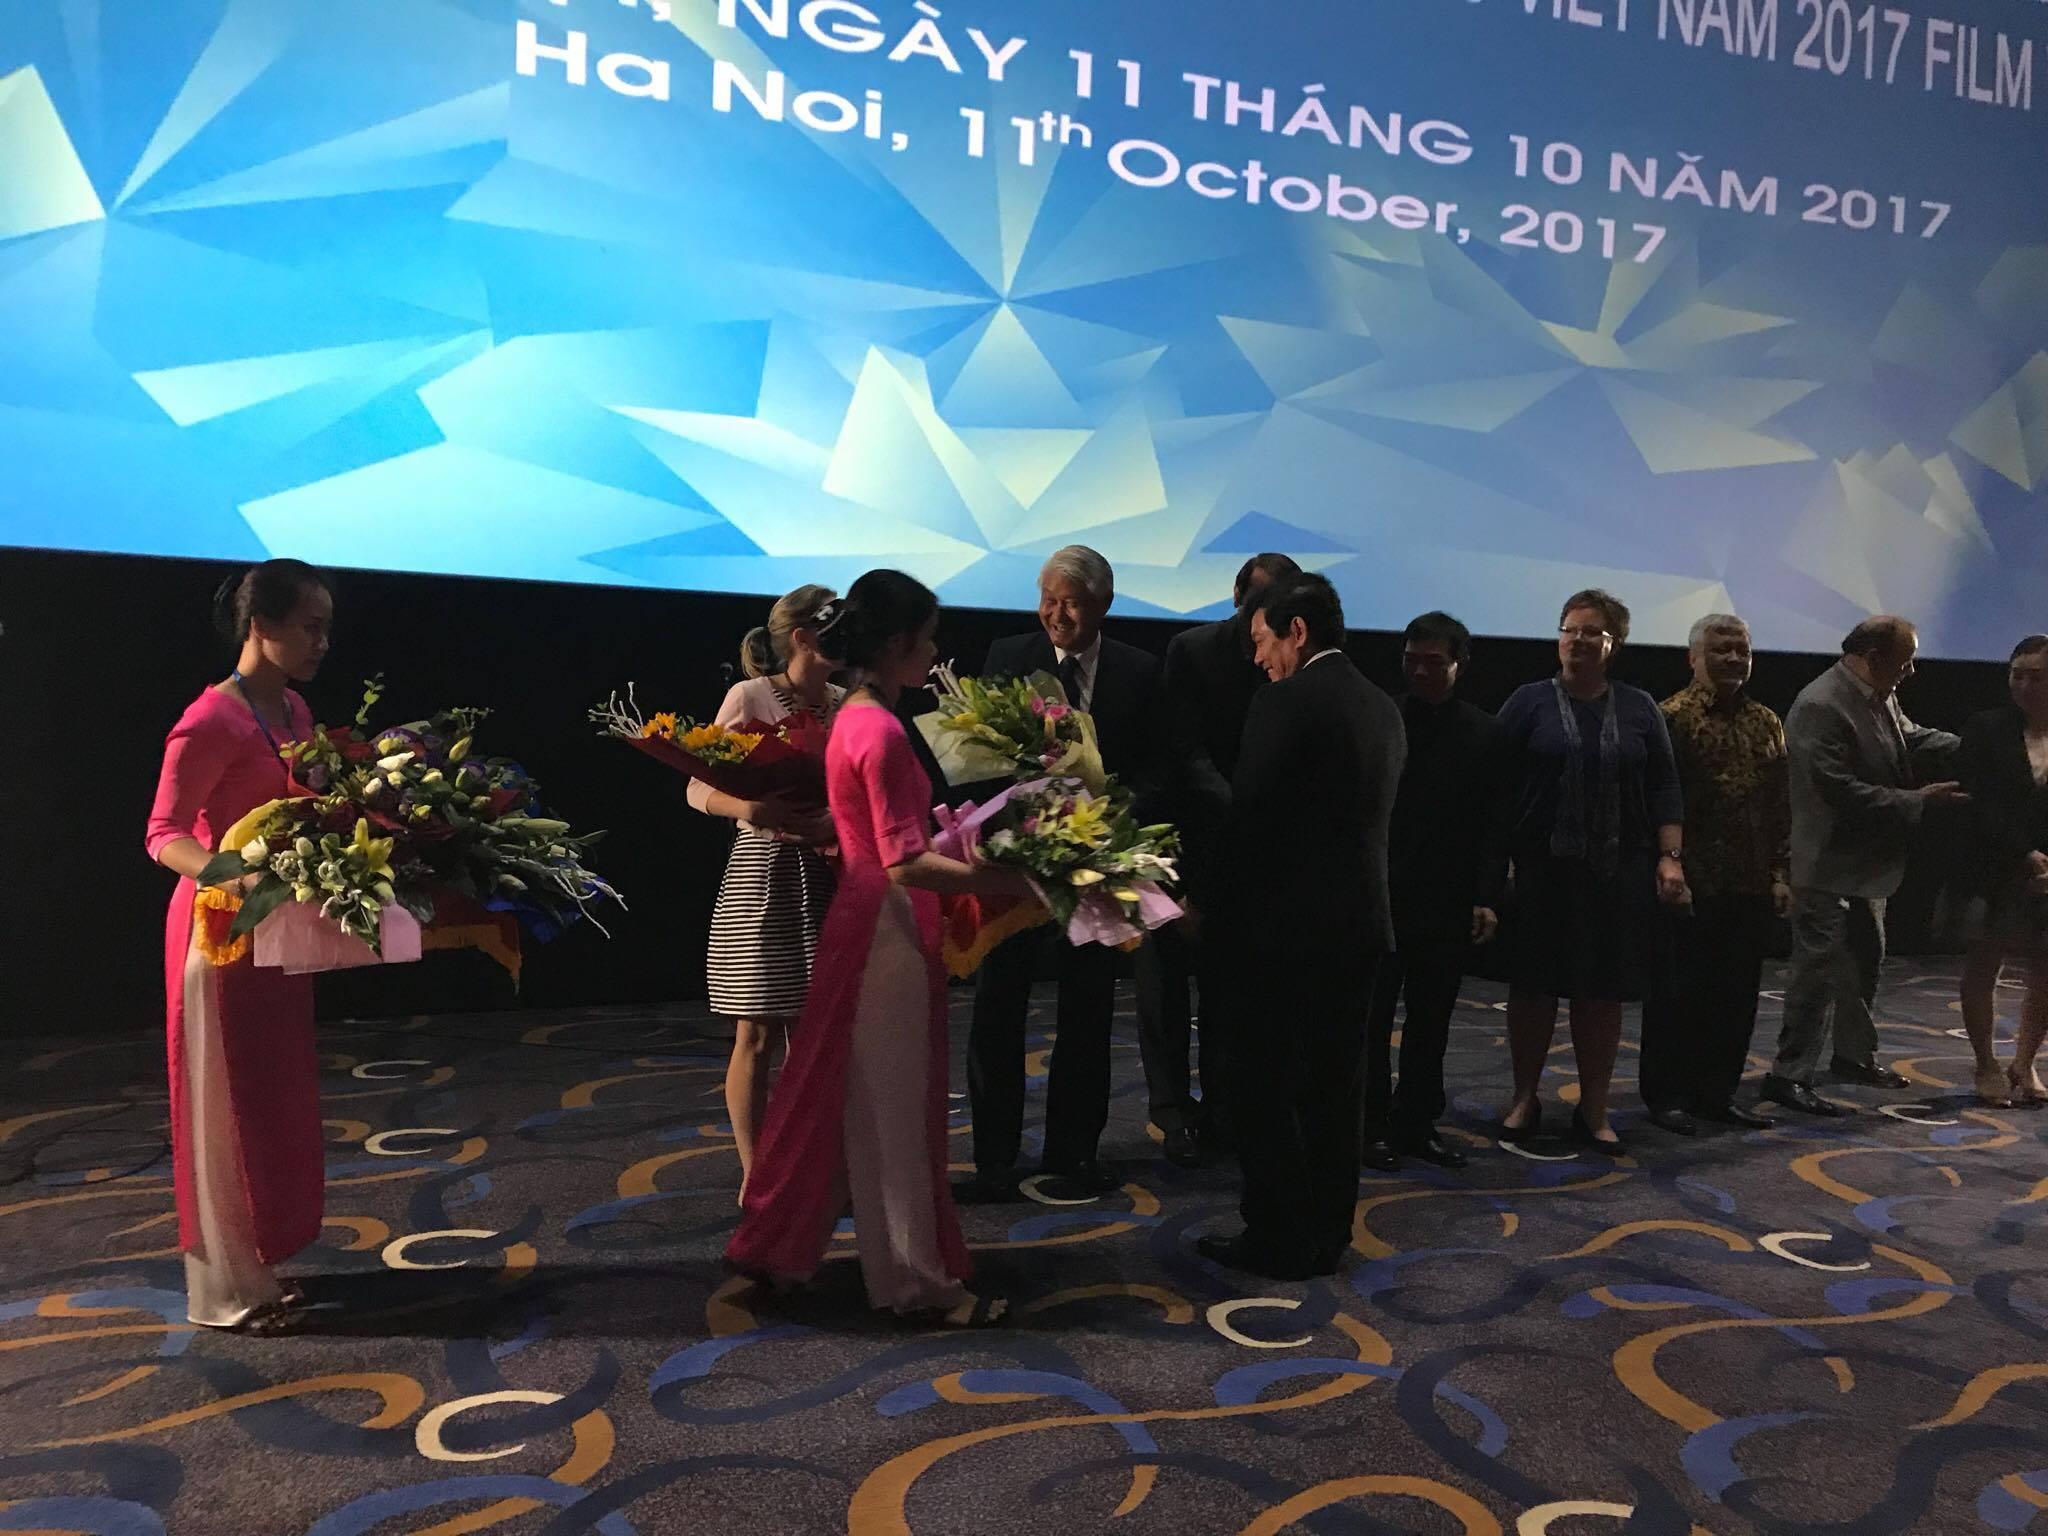 Thứ trưởng  Bộ Văn hóa, Thể thao và Du lịch Huỳnh Vĩnh Ái tặng hoa Ngài Đại sứ Thạch Thụy Kỳ để bày tỏ chính phủ Việt Nam đánh giá cao đóng góp của Đài Loan đối với Tuần phim APEC 2017.